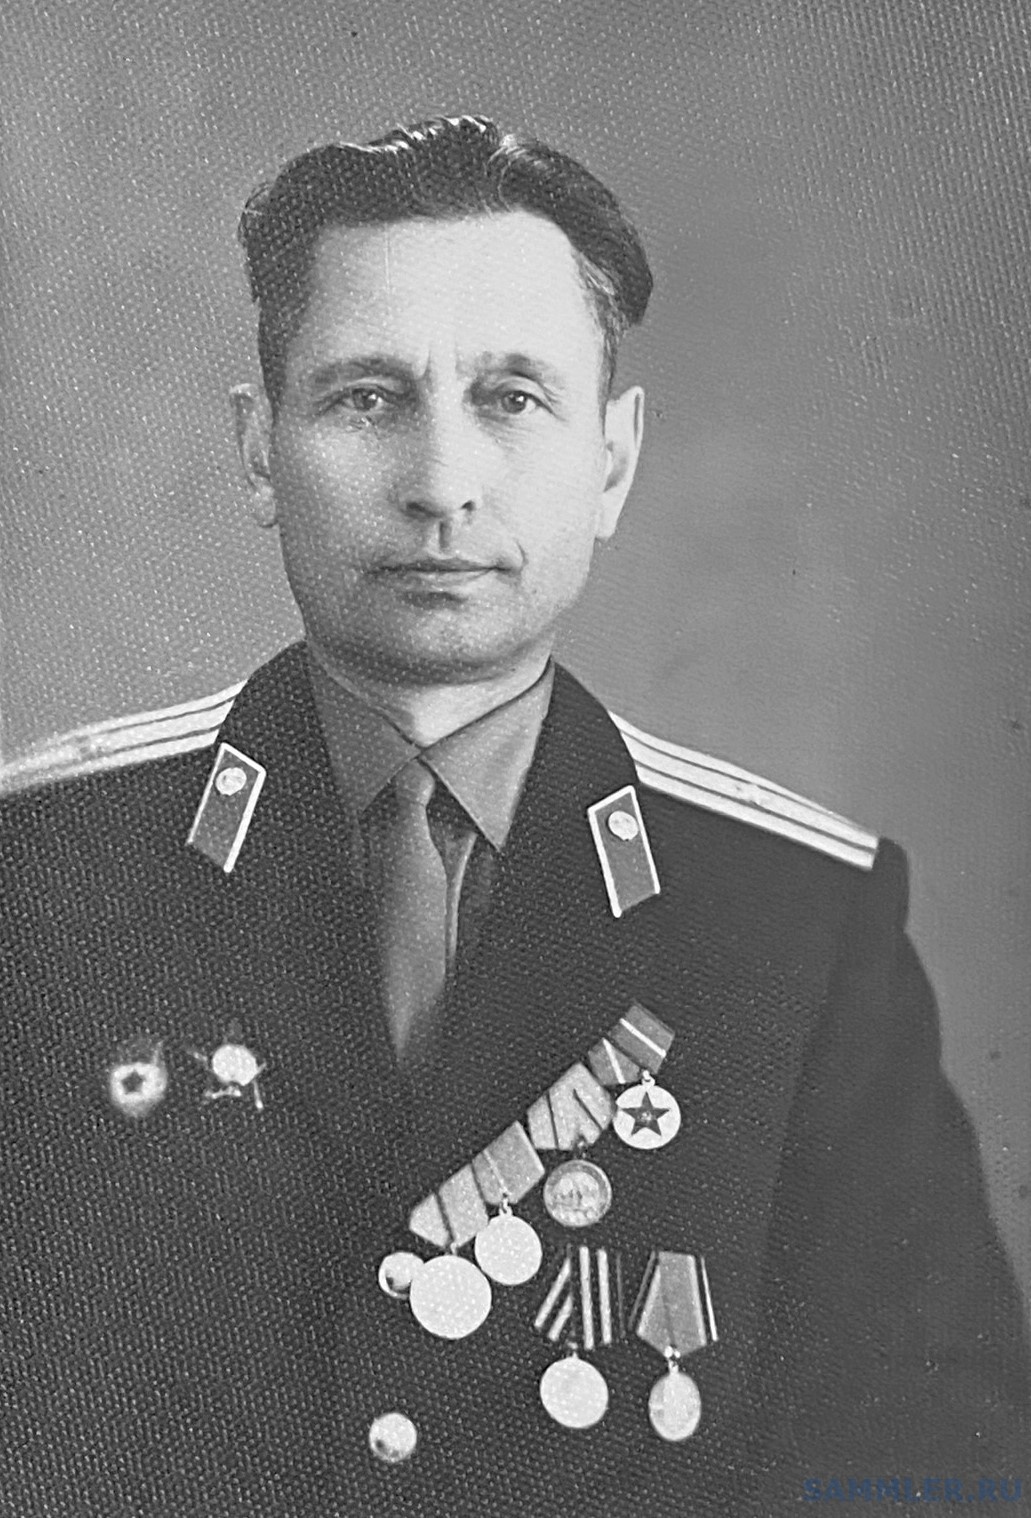 Борщев Алексей Филиппович, майор милиции. 1960 г..jpg